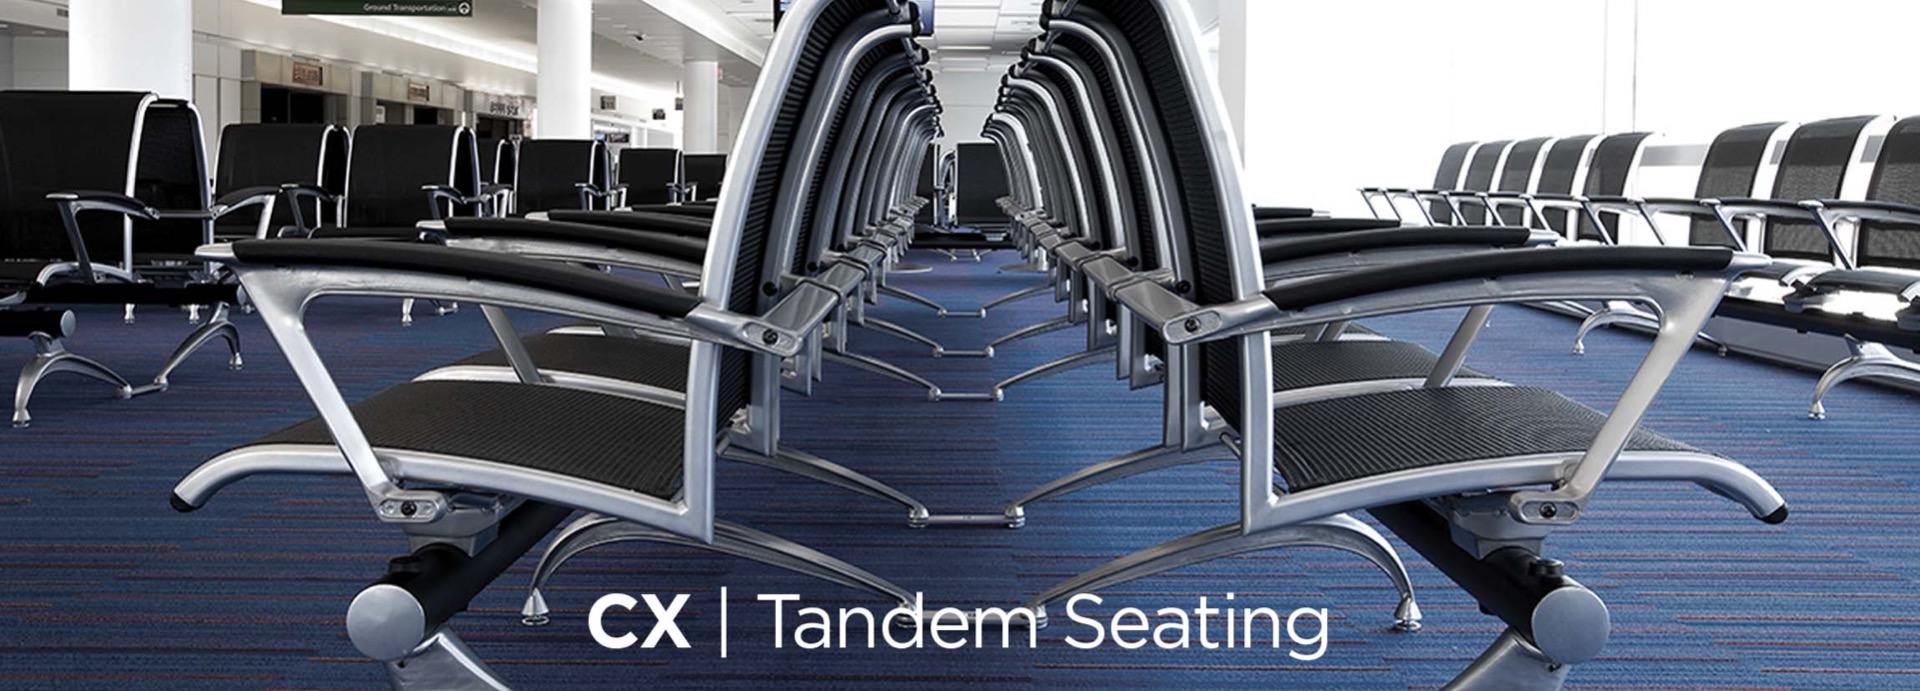 CX | Tandem Seating